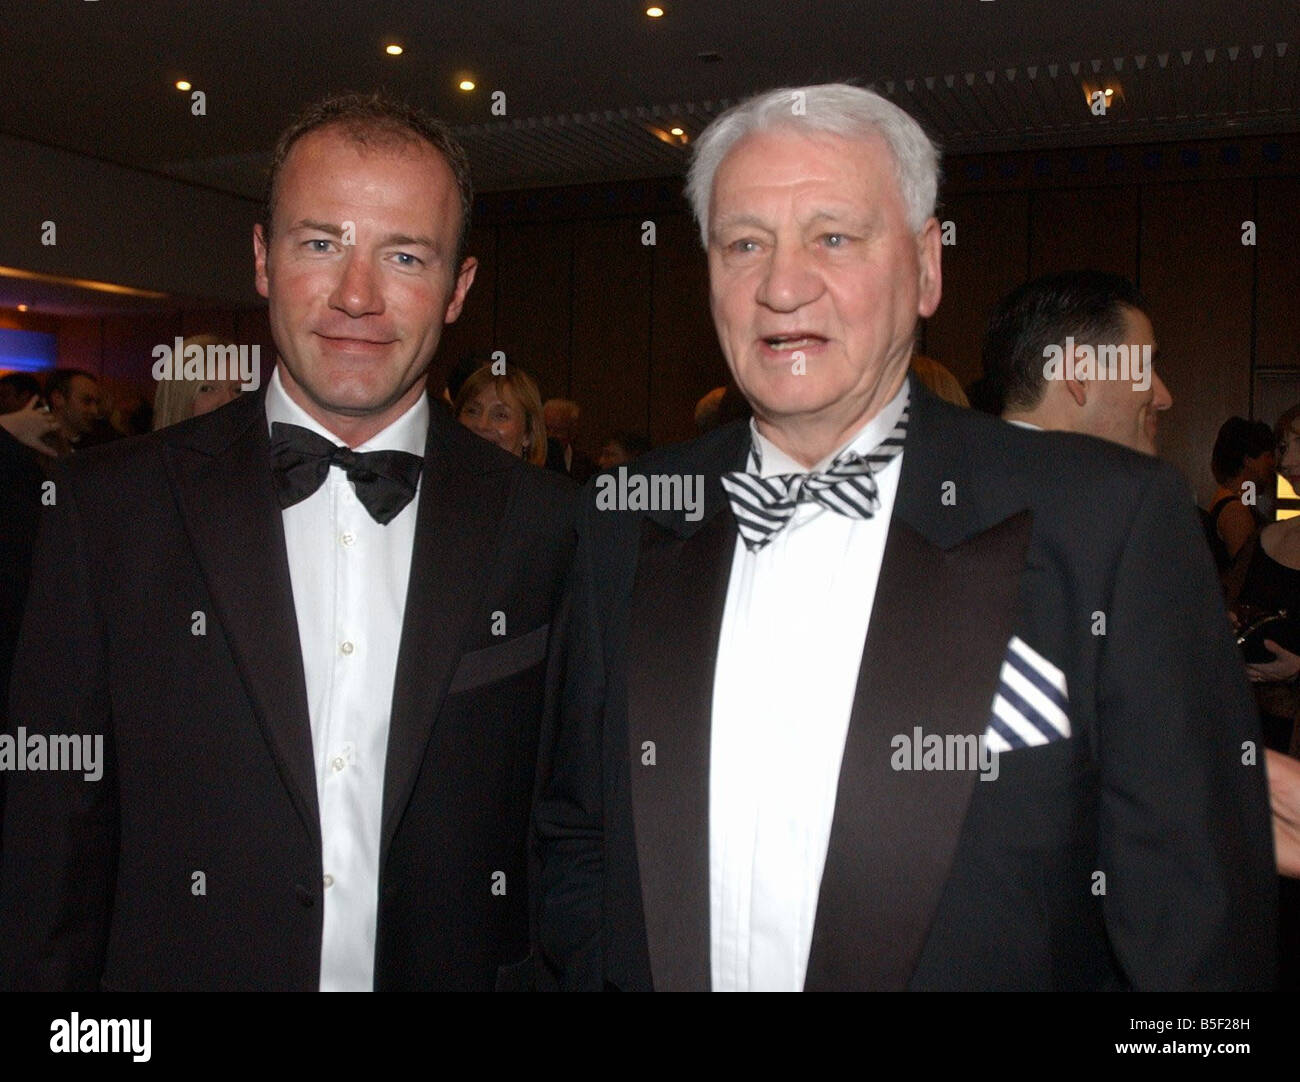 St Cuthberts cura la cena presso l'Hotel Hilton dove Sir Bobby Robson ha ricevuto un premio da Alan Shearer Foto Stock